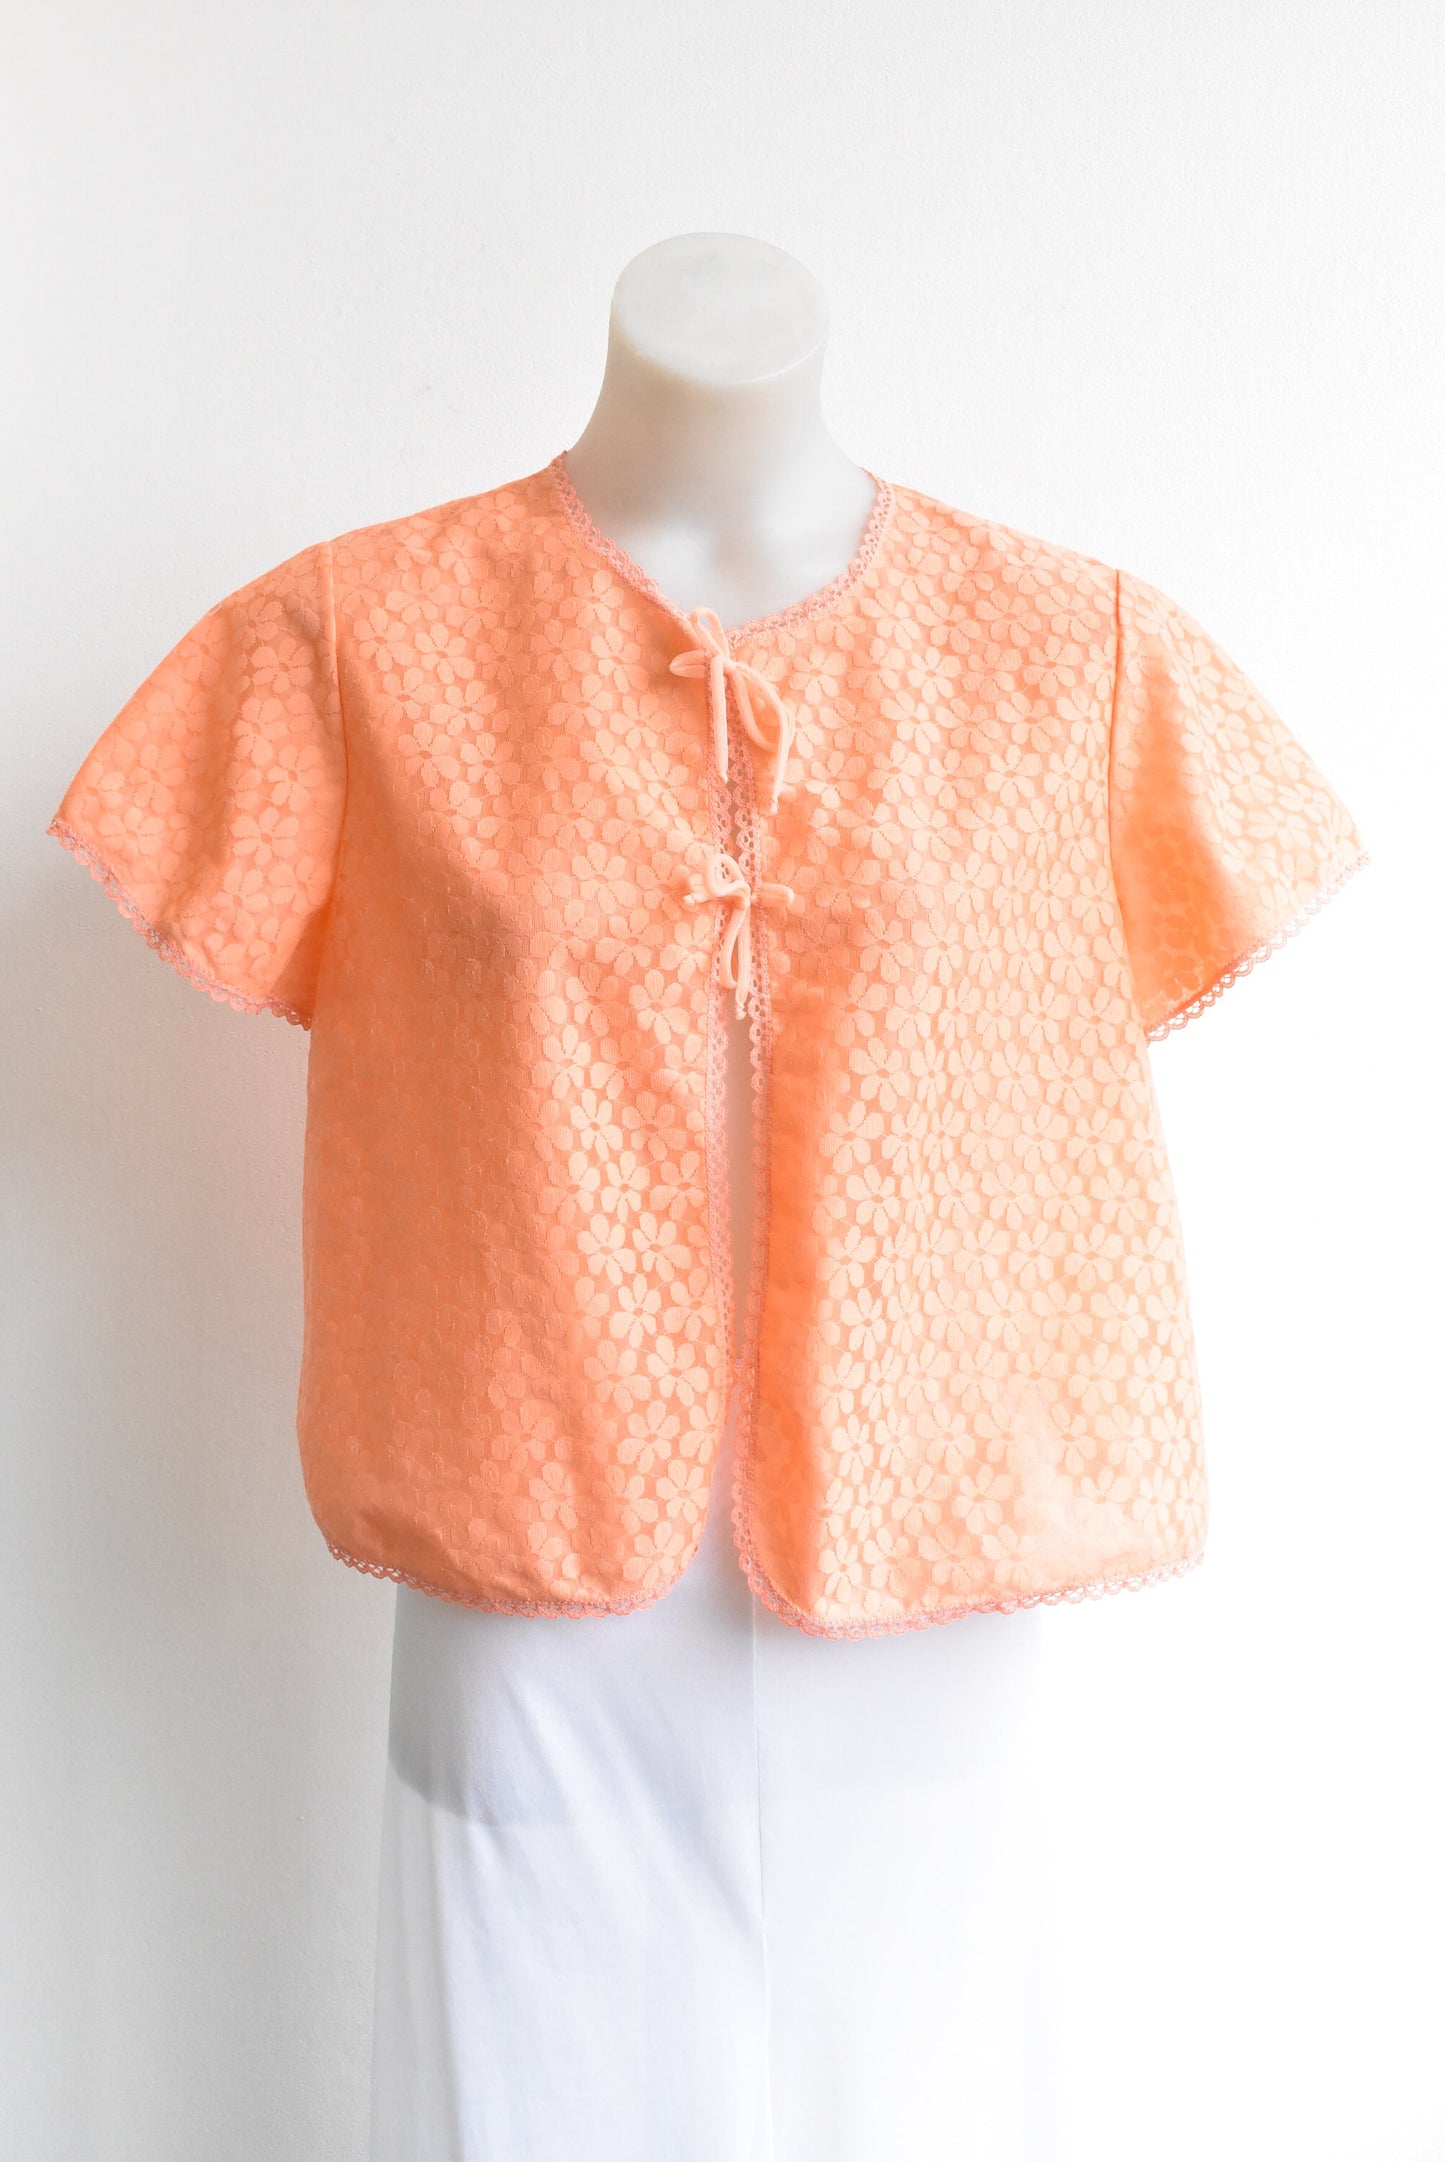 Bri Nylon vintage orange lingerie